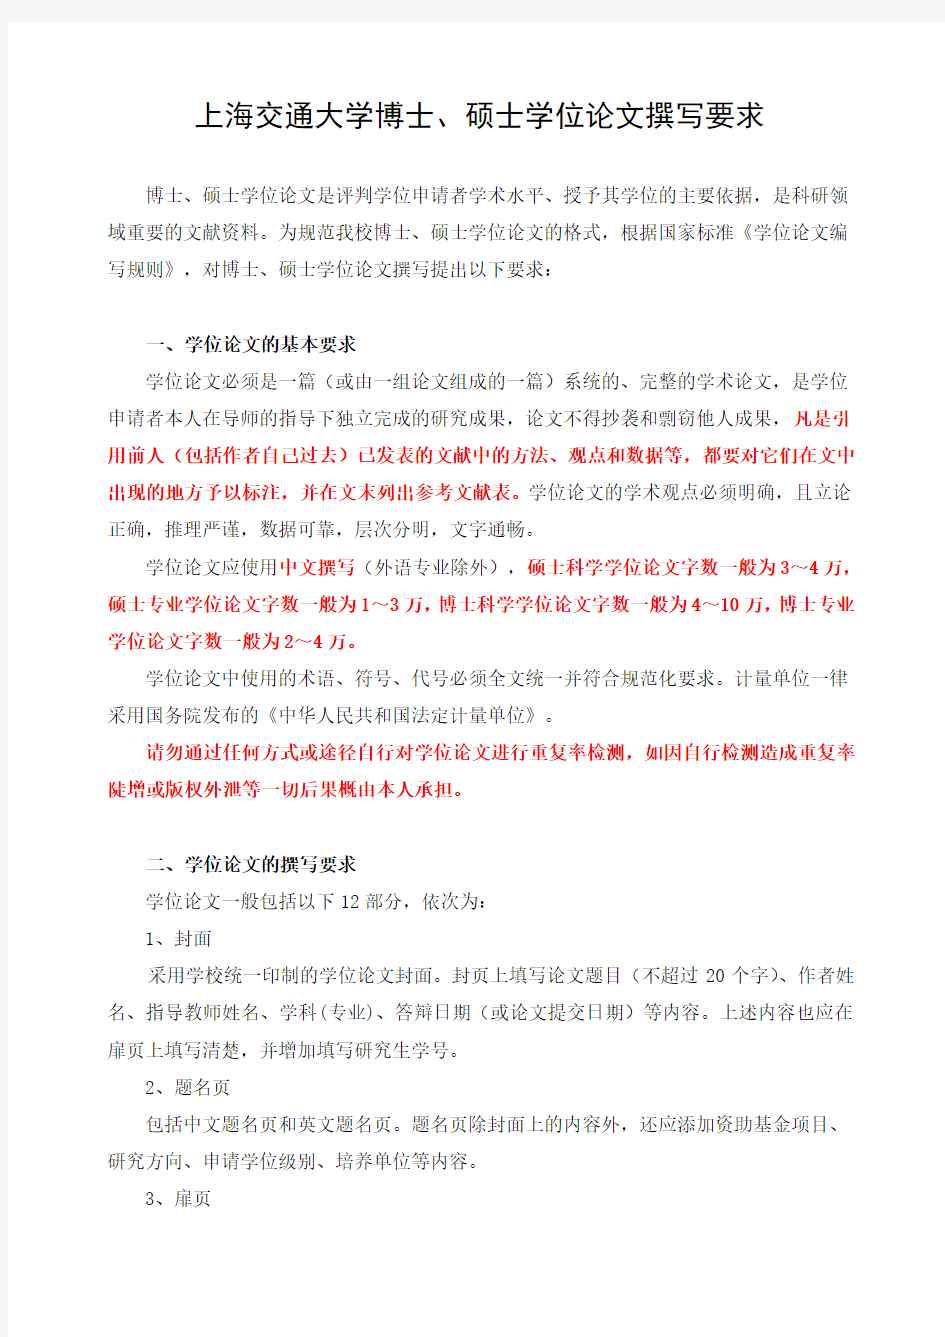 上海交通大学博士、硕士学位论文撰写要求